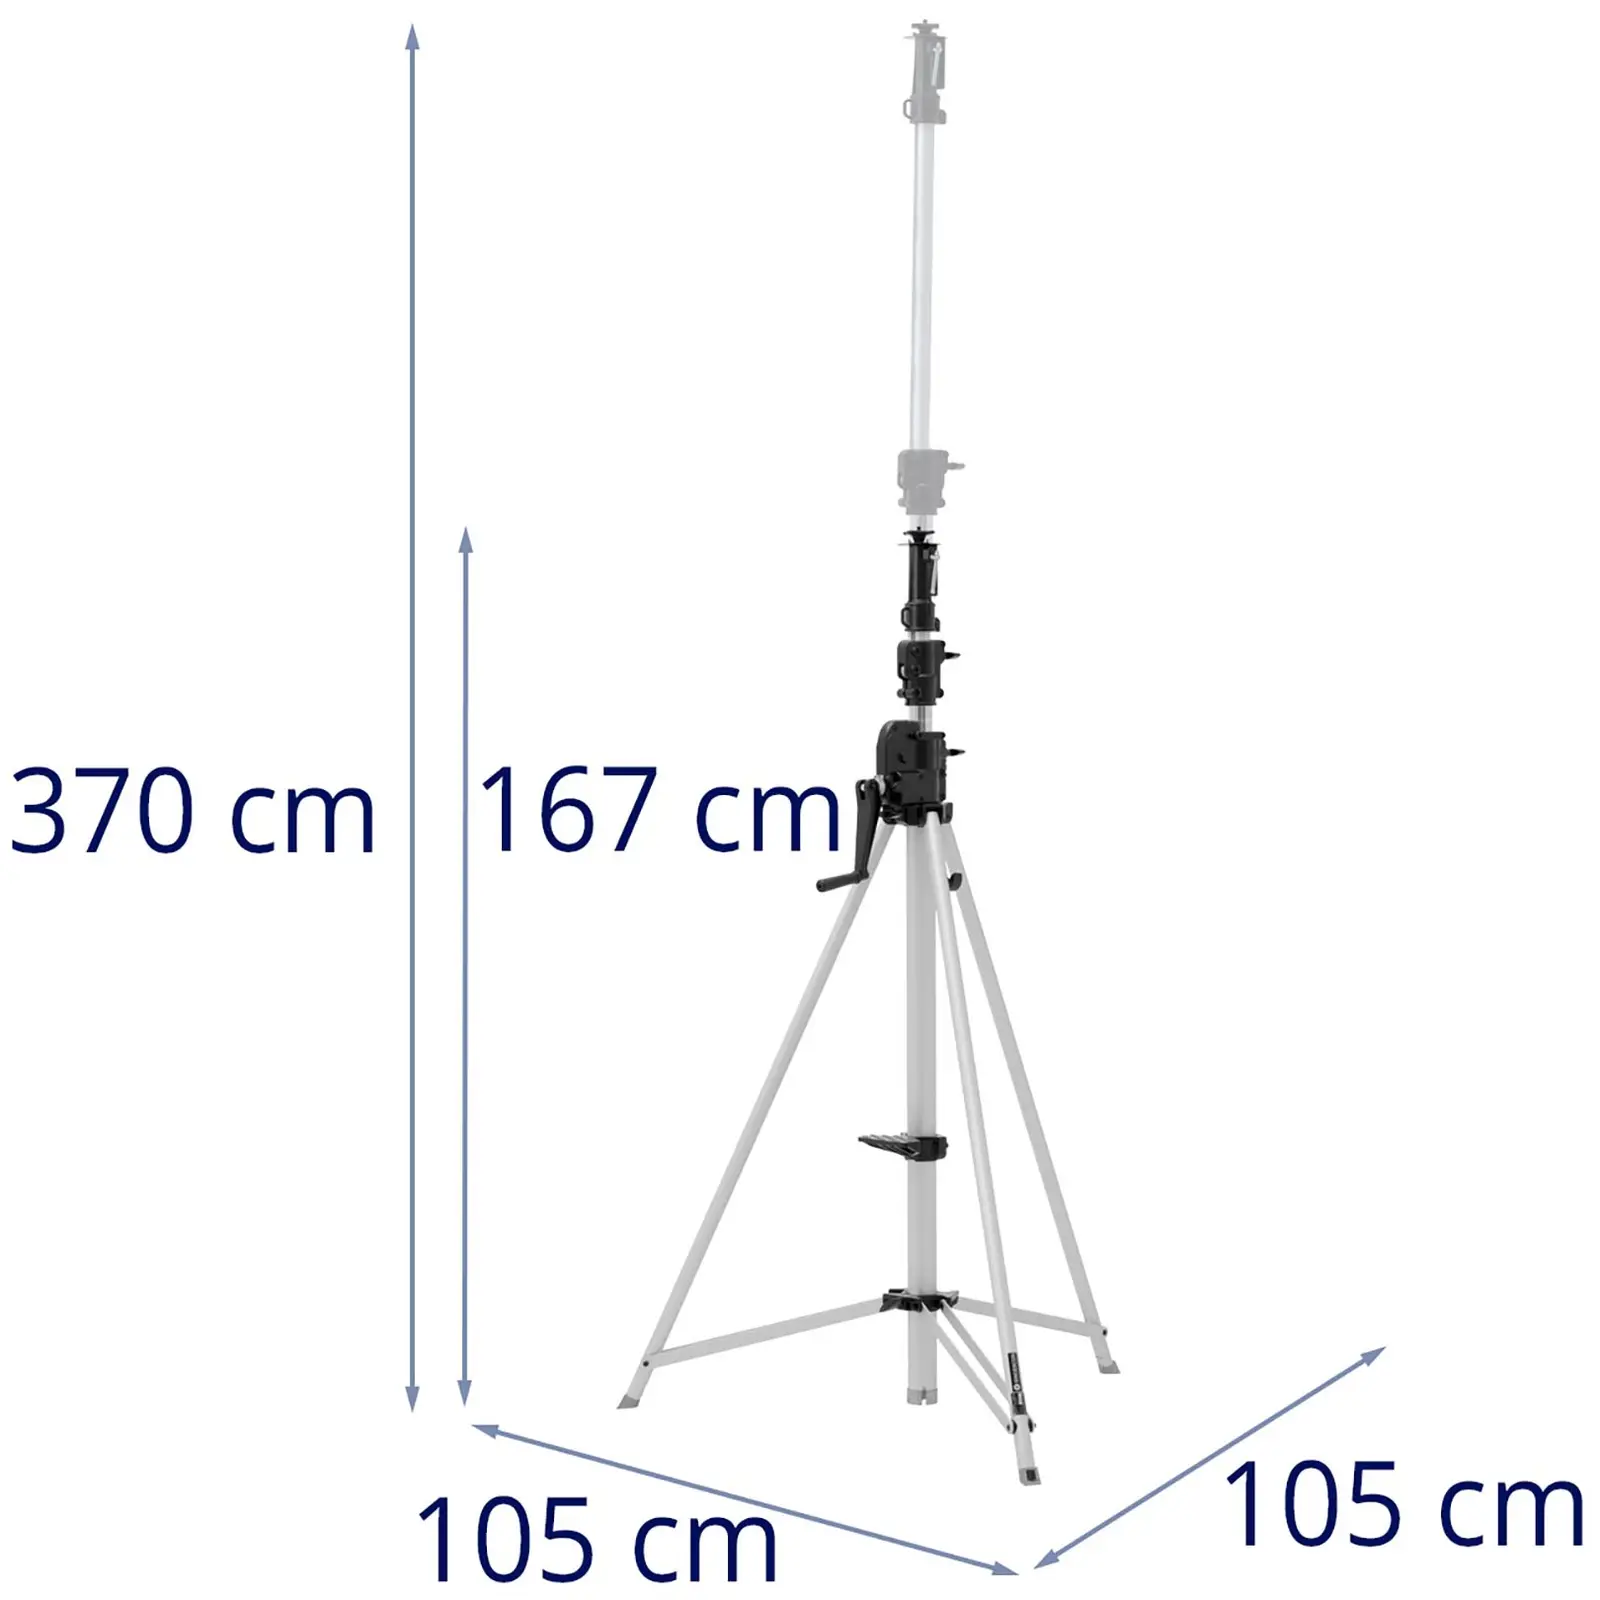 B-varer Light Stand - up to 50 kg - 1.67 - 3.7 m